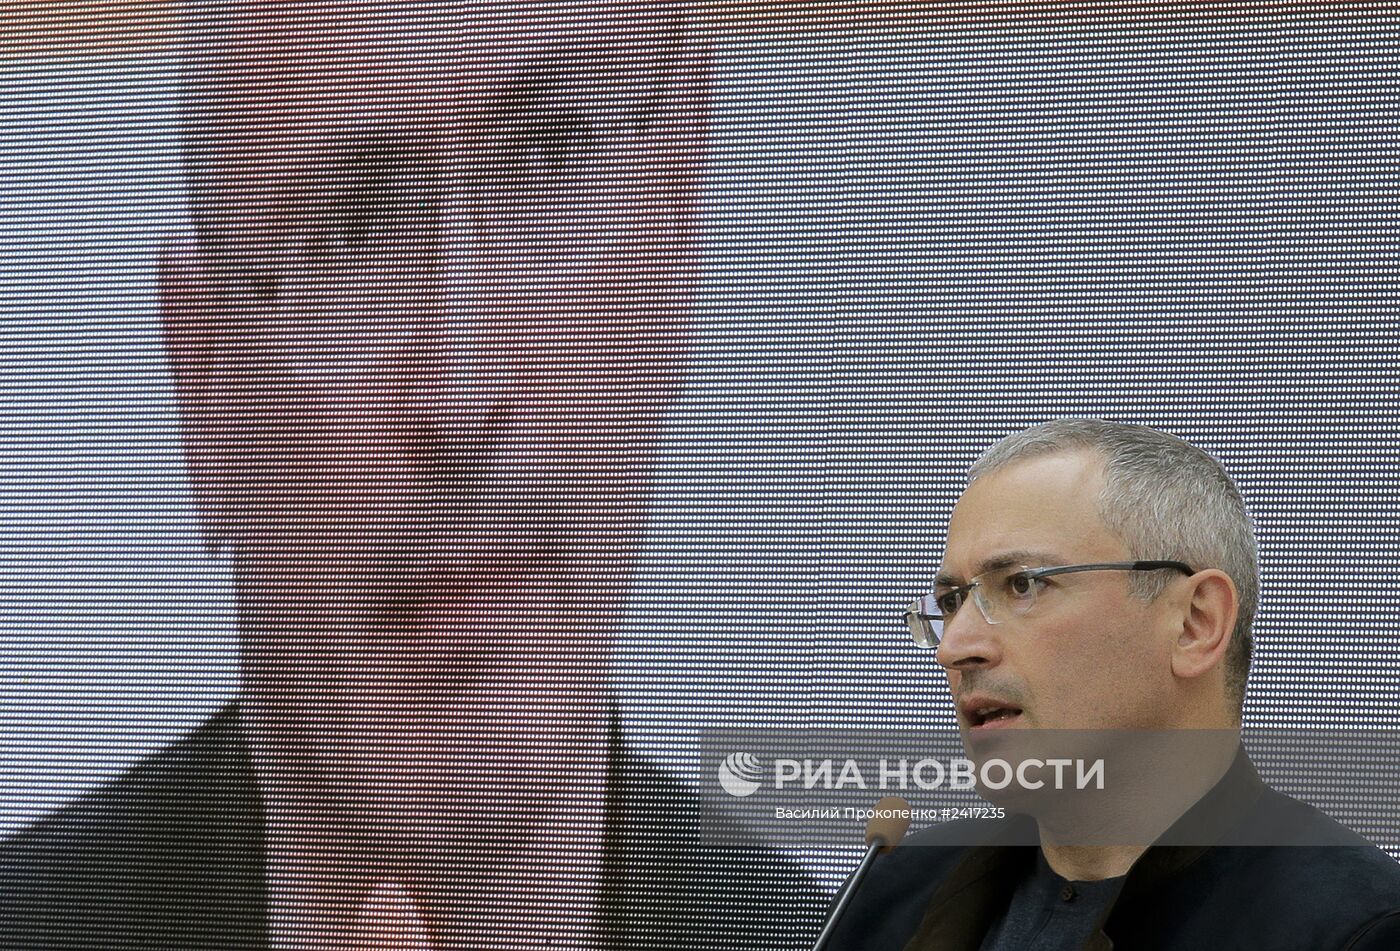 М.Ходорковский принял участие в конгрессе "Украина-Россия: диалог"